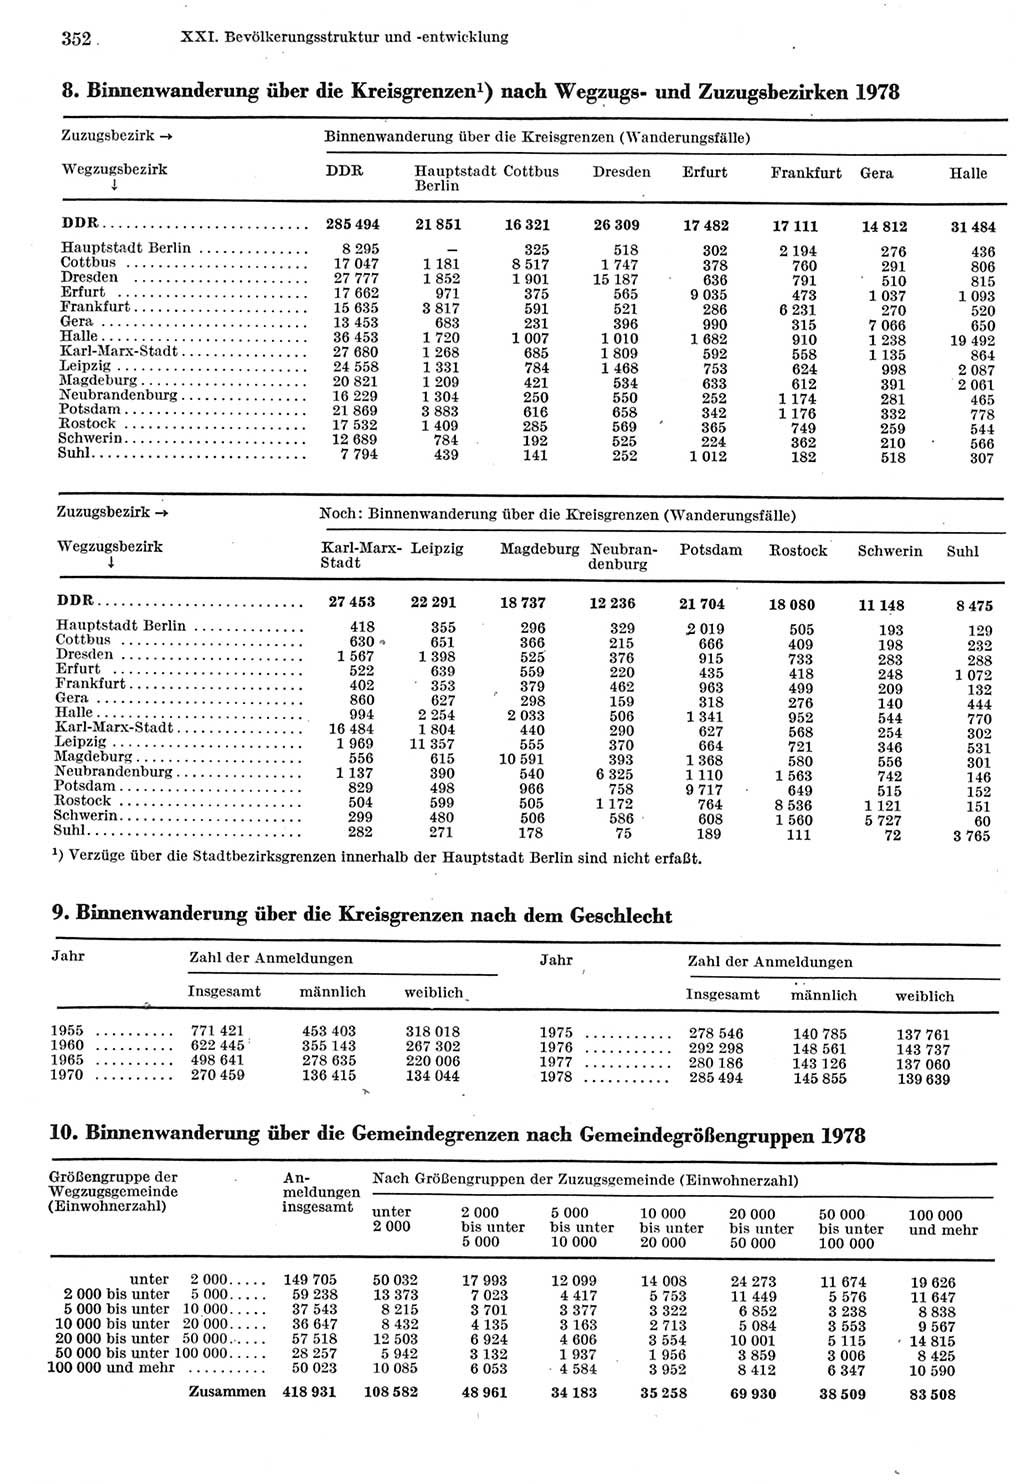 Statistisches Jahrbuch der Deutschen Demokratischen Republik (DDR) 1980, Seite 352 (Stat. Jb. DDR 1980, S. 352)